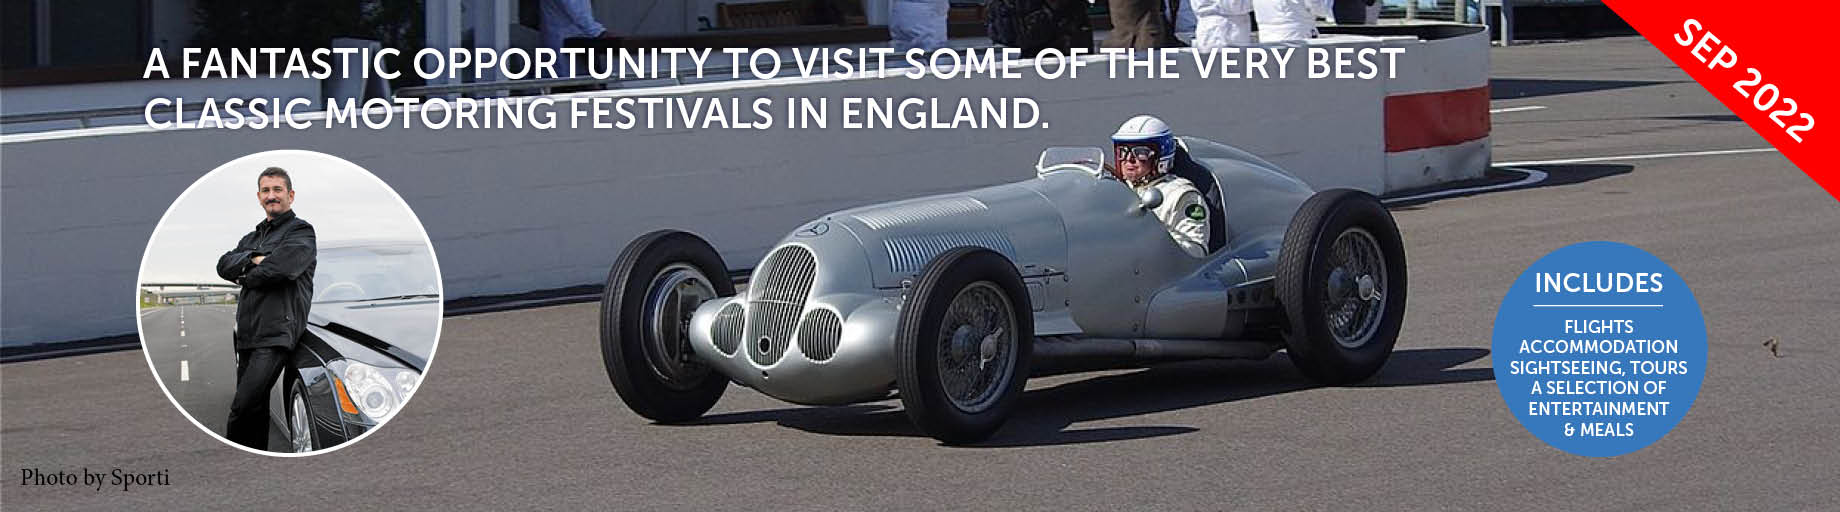 Classic Car tour to England